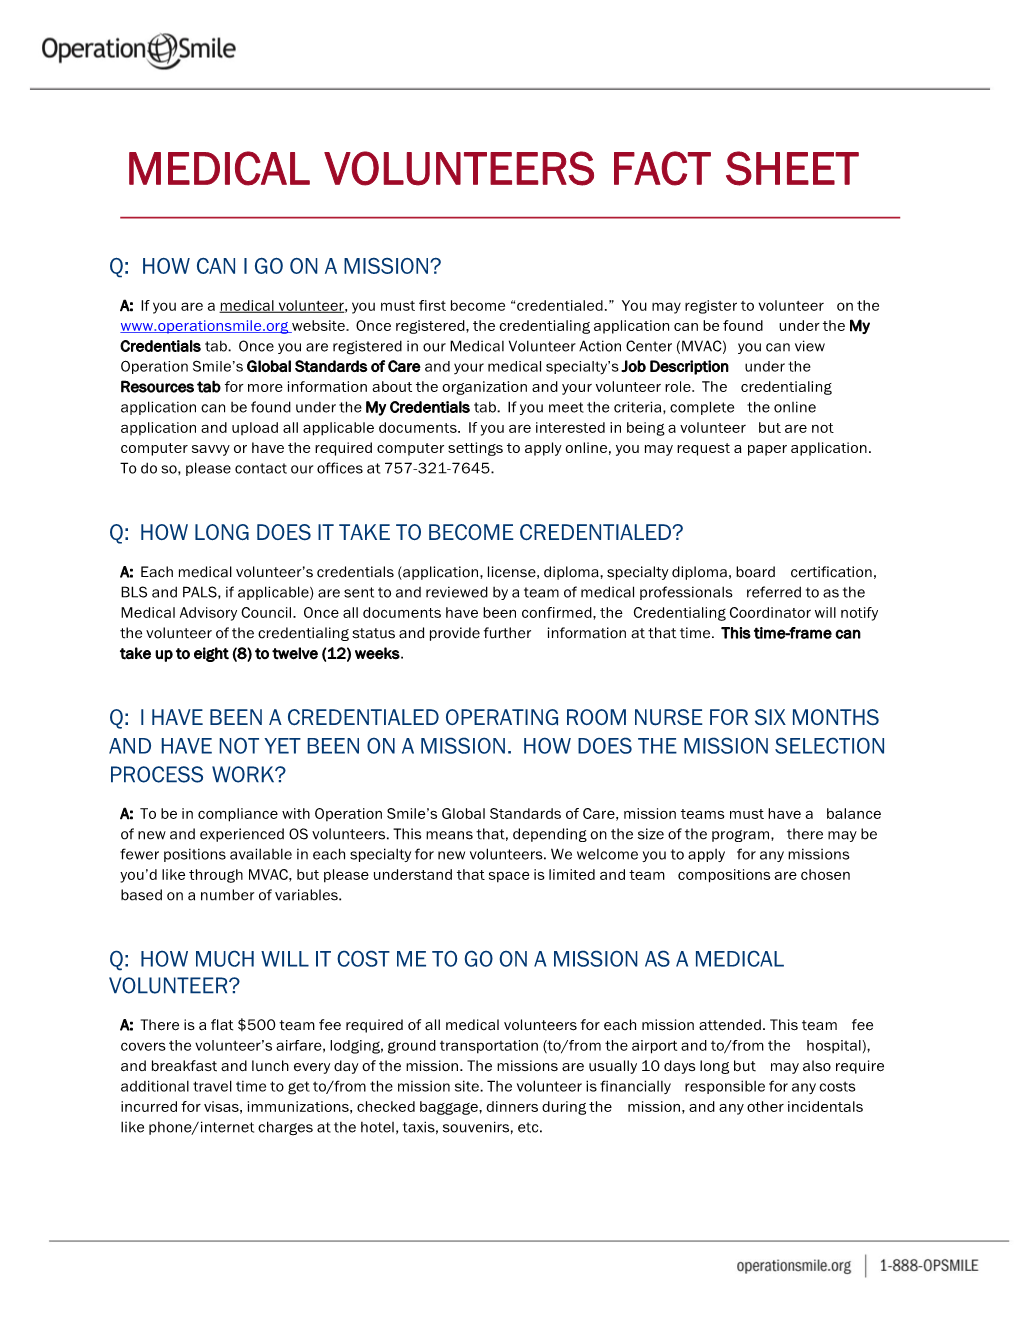 Medical Volunteers Fact Sheet